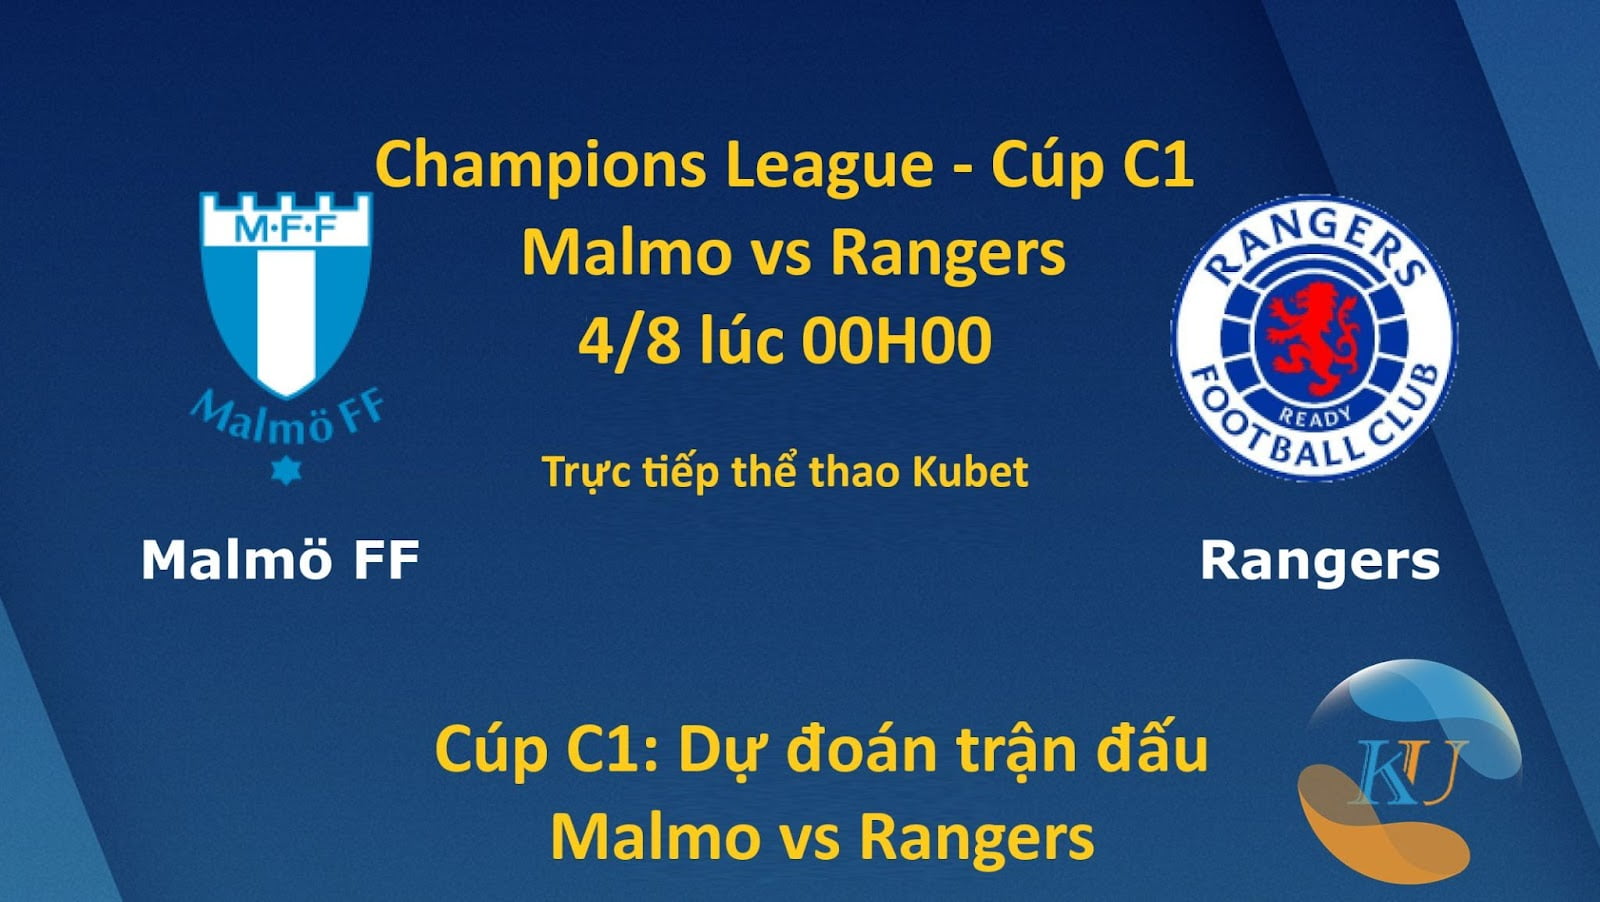 Cúp C1: Dự đoán trận đấu Malmo vs Rangers